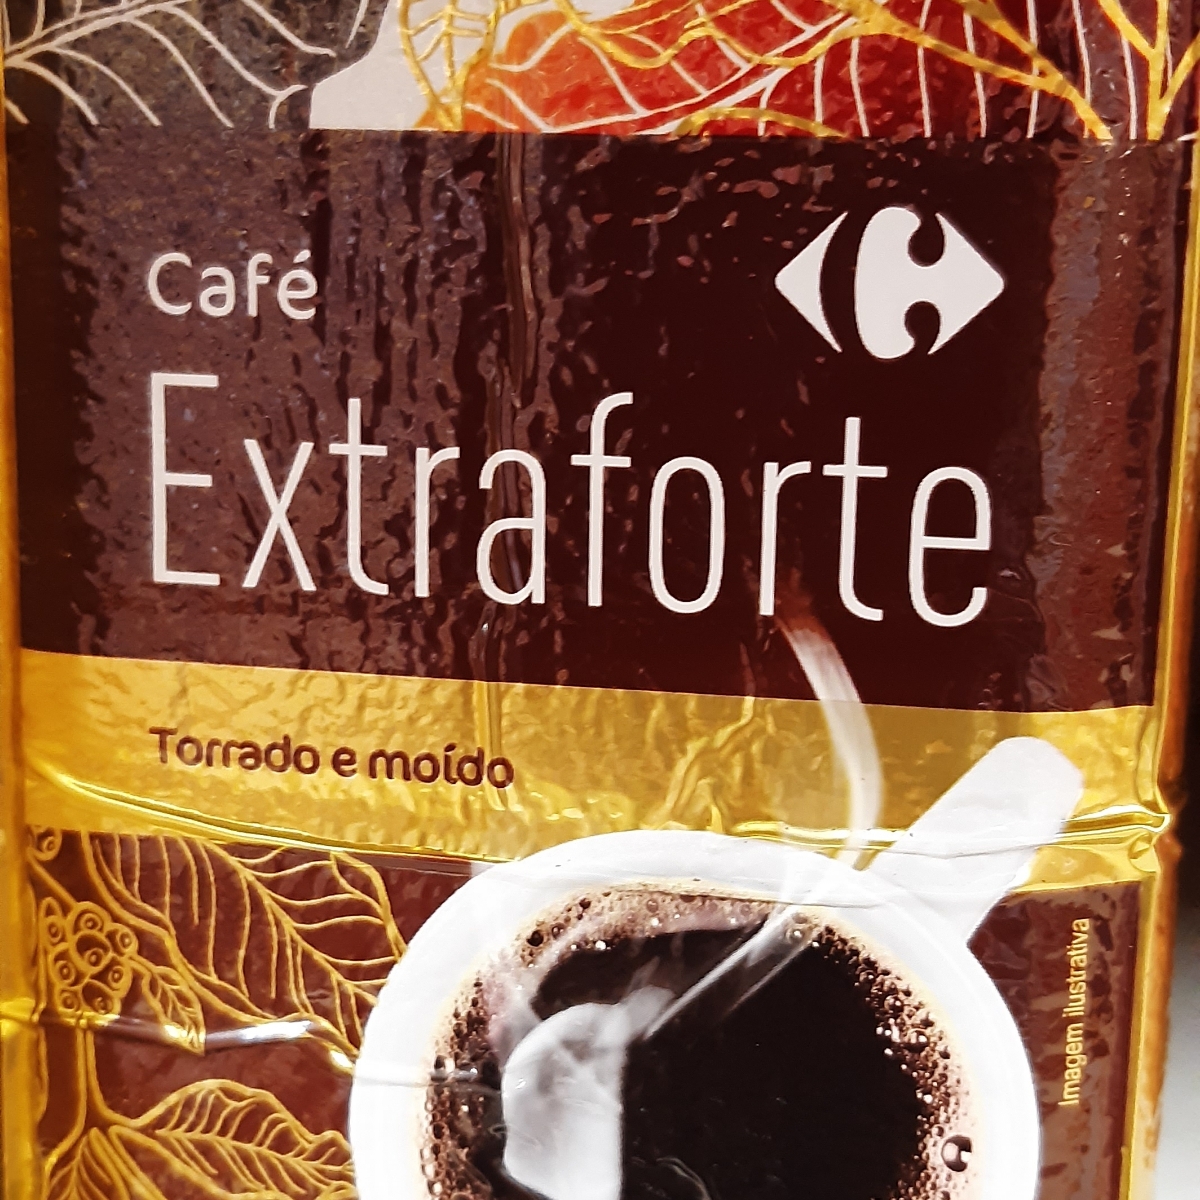 Café molido natural descafeinado Carrefour 250 g.